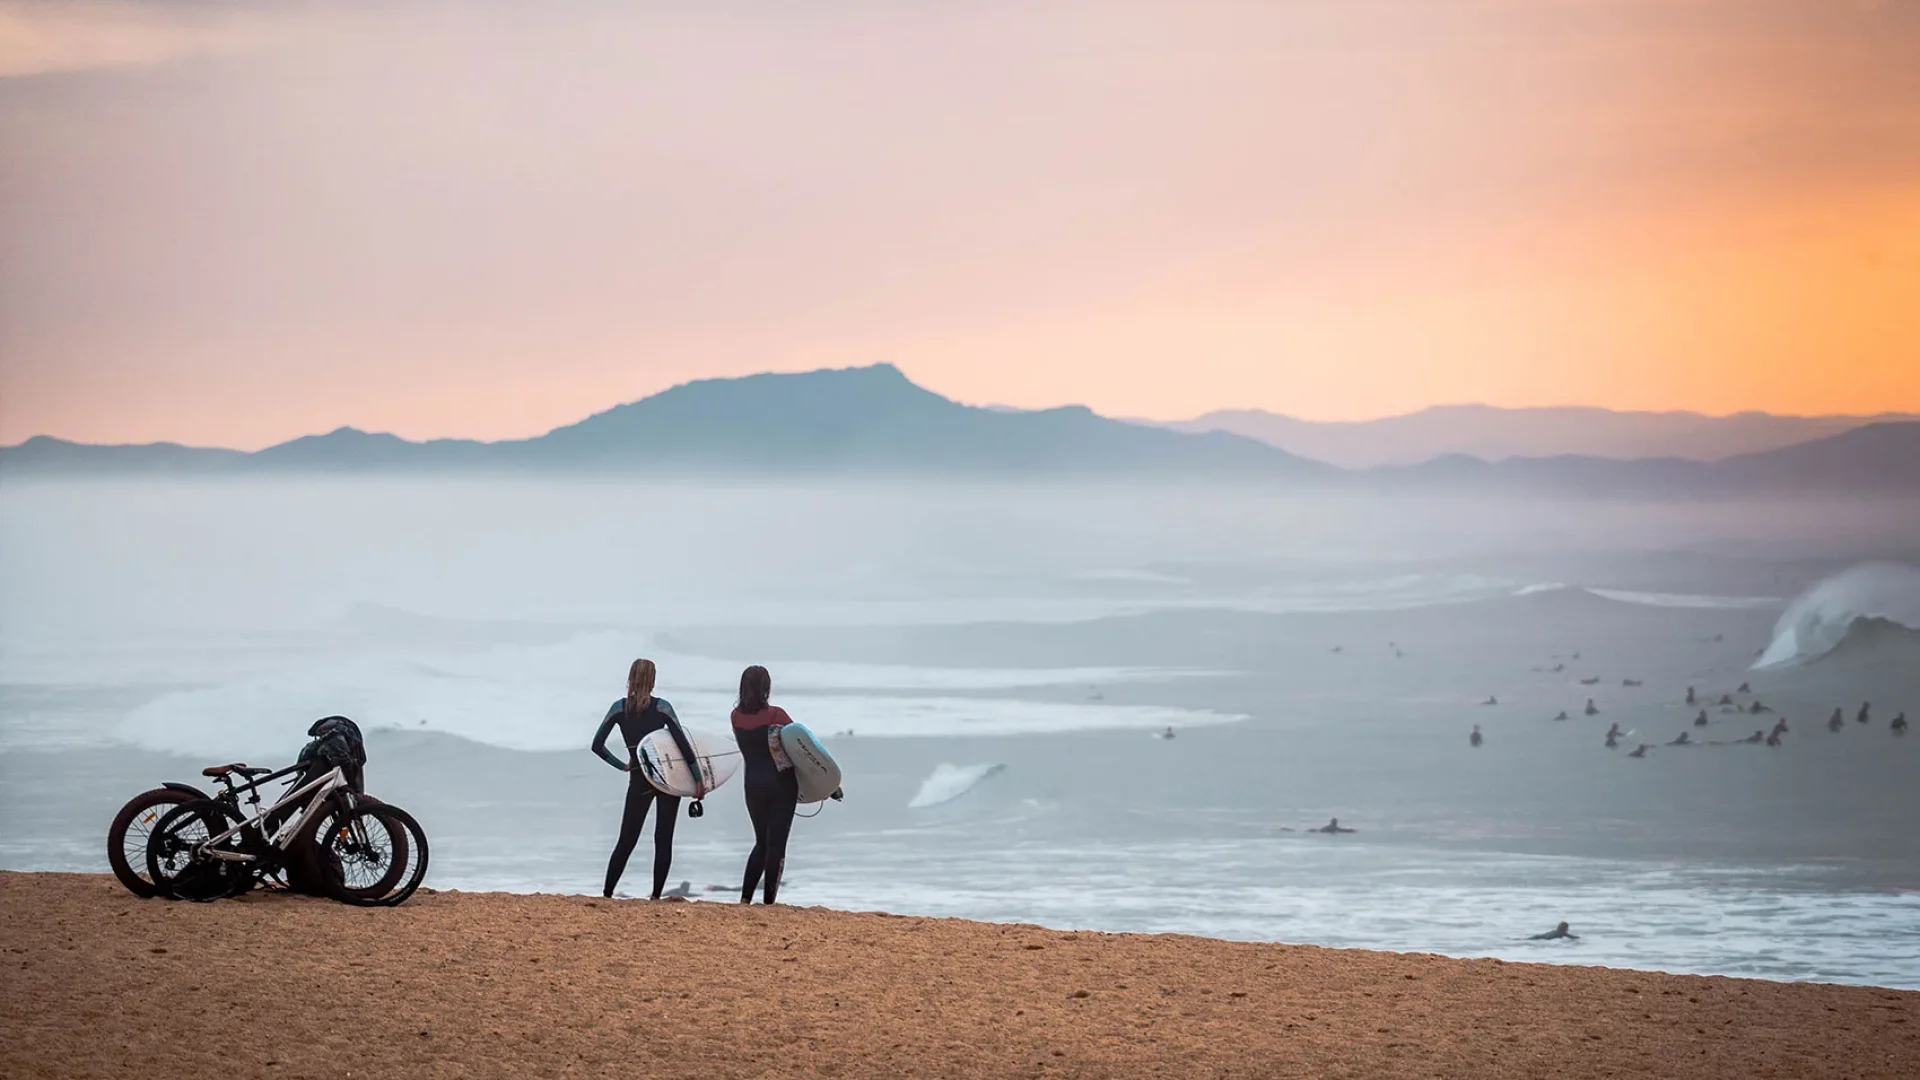 Surfeuses sur la plage du santocha en fatbike prêtent à aller surfer.